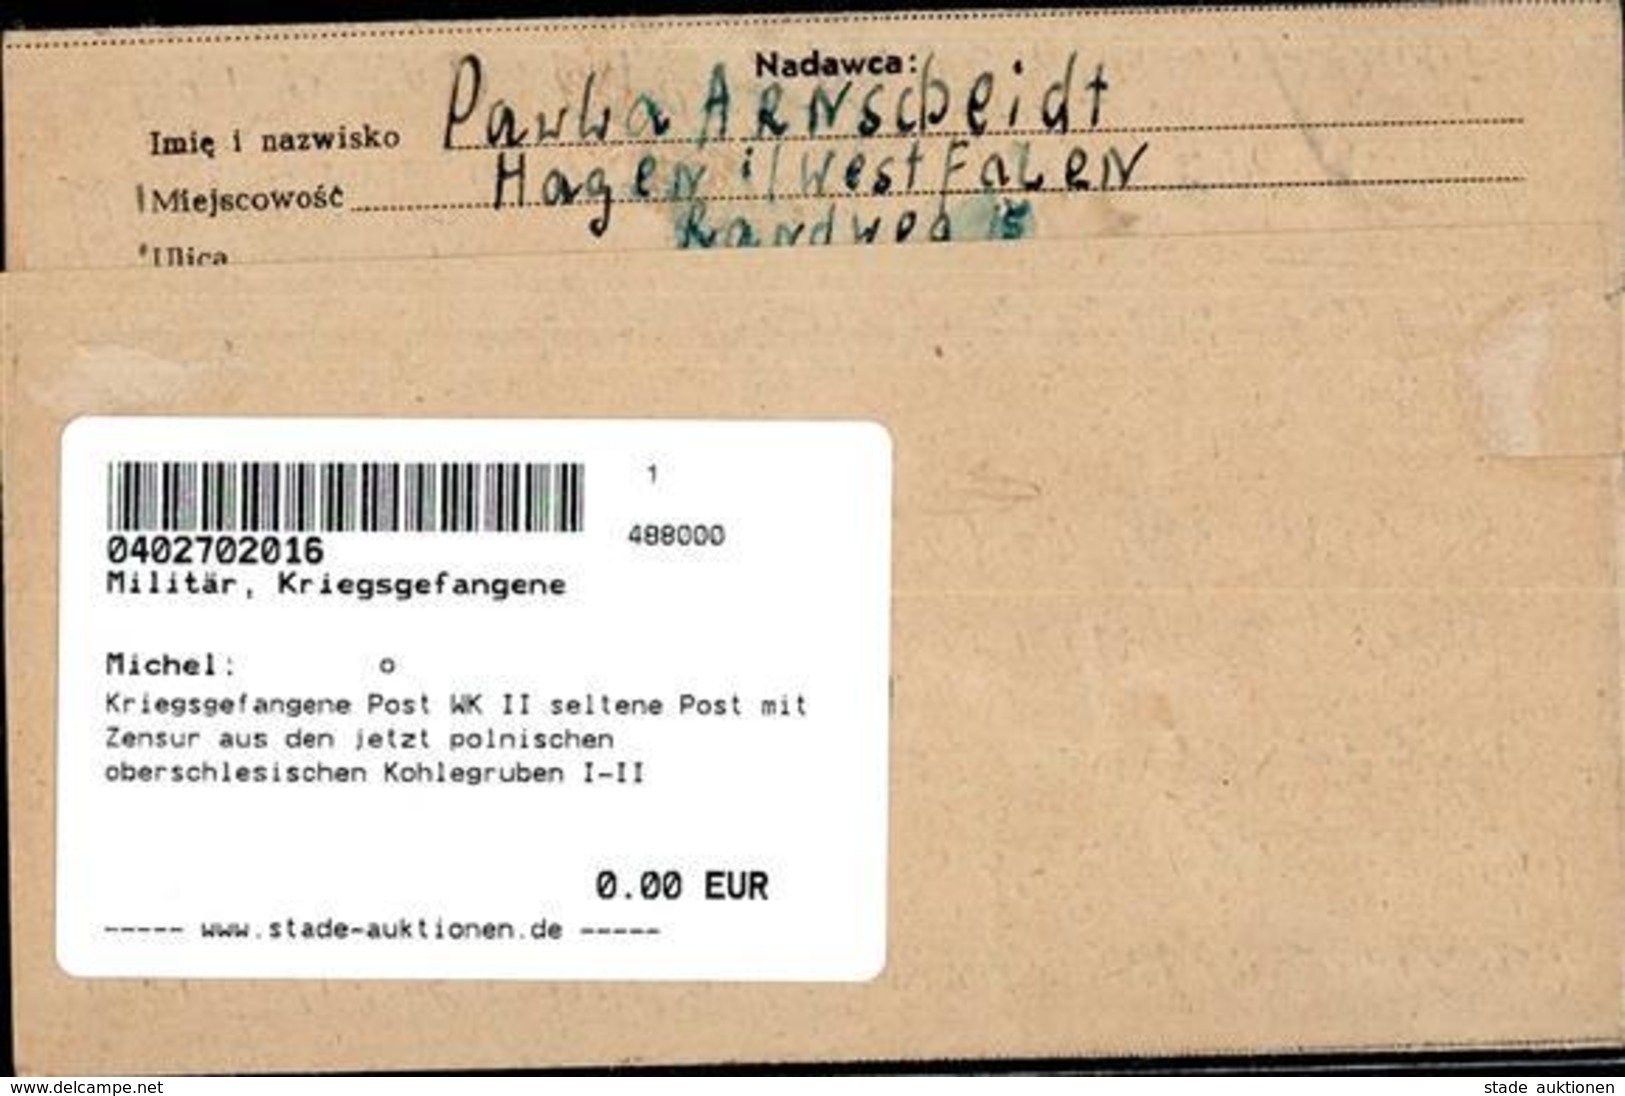 Kriegsgefangene Post WK II Seltene Post Mit Zensur Aus Den Jetzt Polnischen Oberschlesischen Kohlegruben I-II - Weltkrieg 1939-45